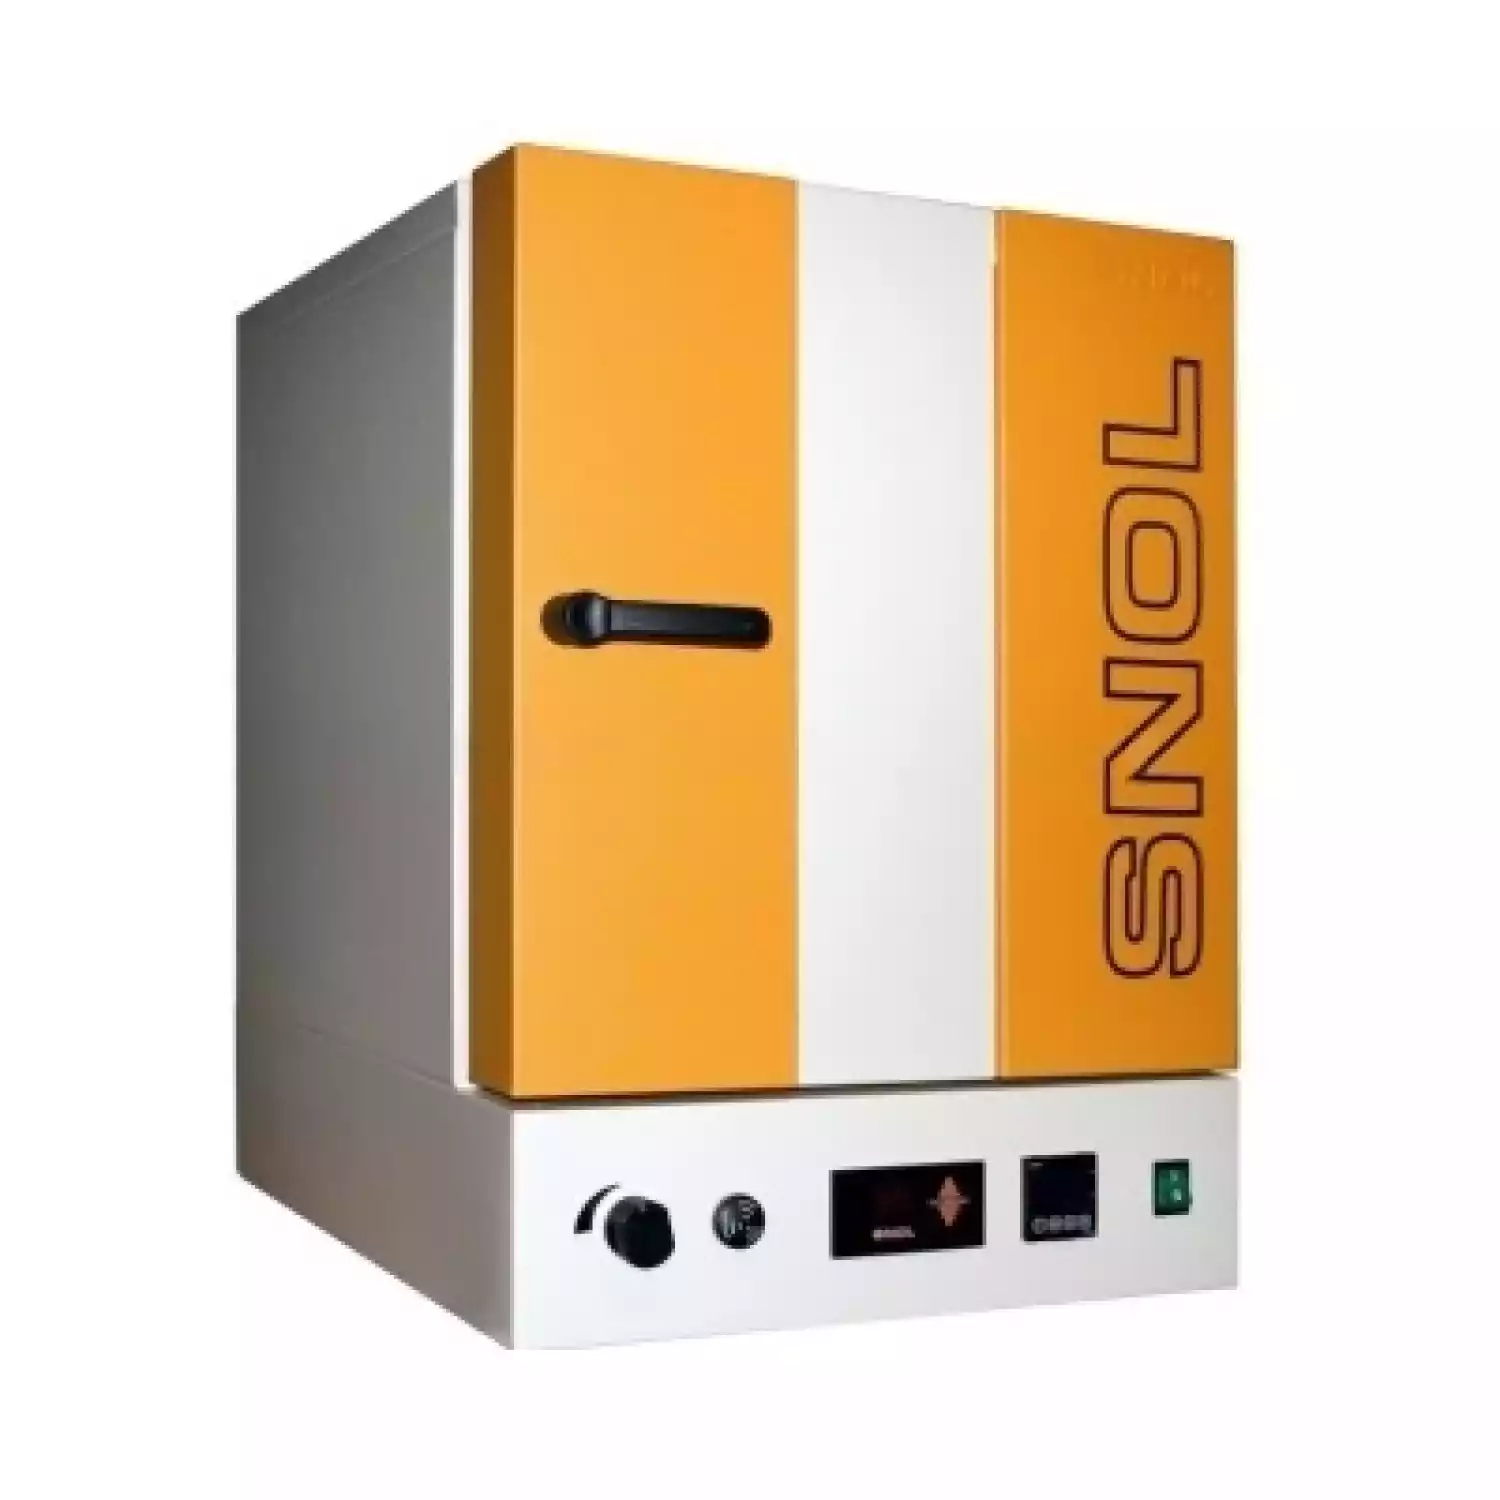 SNOL 220/300 LFN шкаф сушильный (220 л, нержавеющая сталь, программируемый) - 1